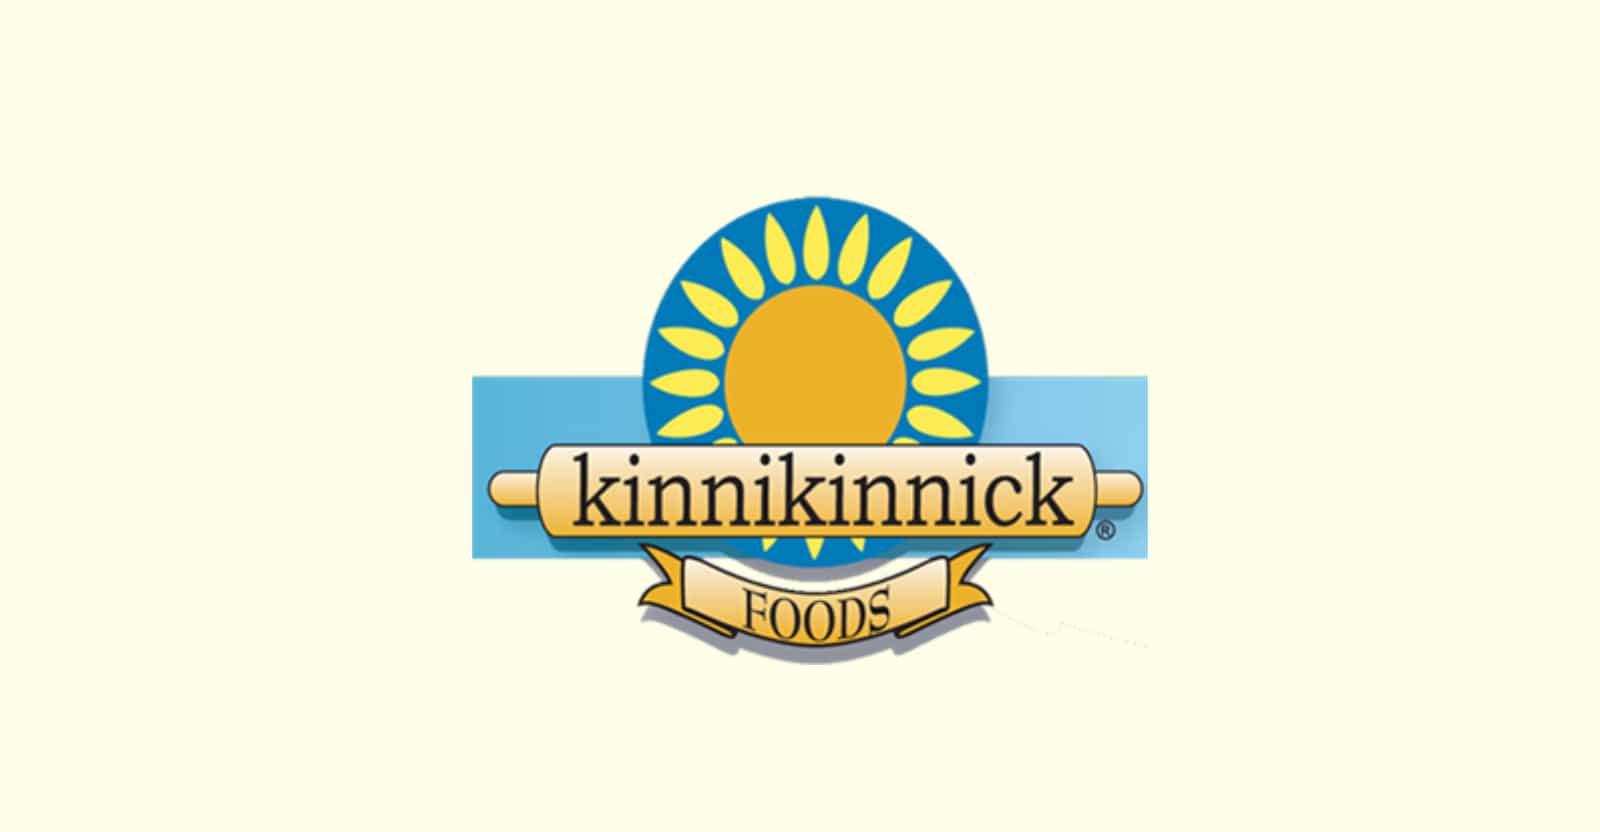 kinnikinnick foods